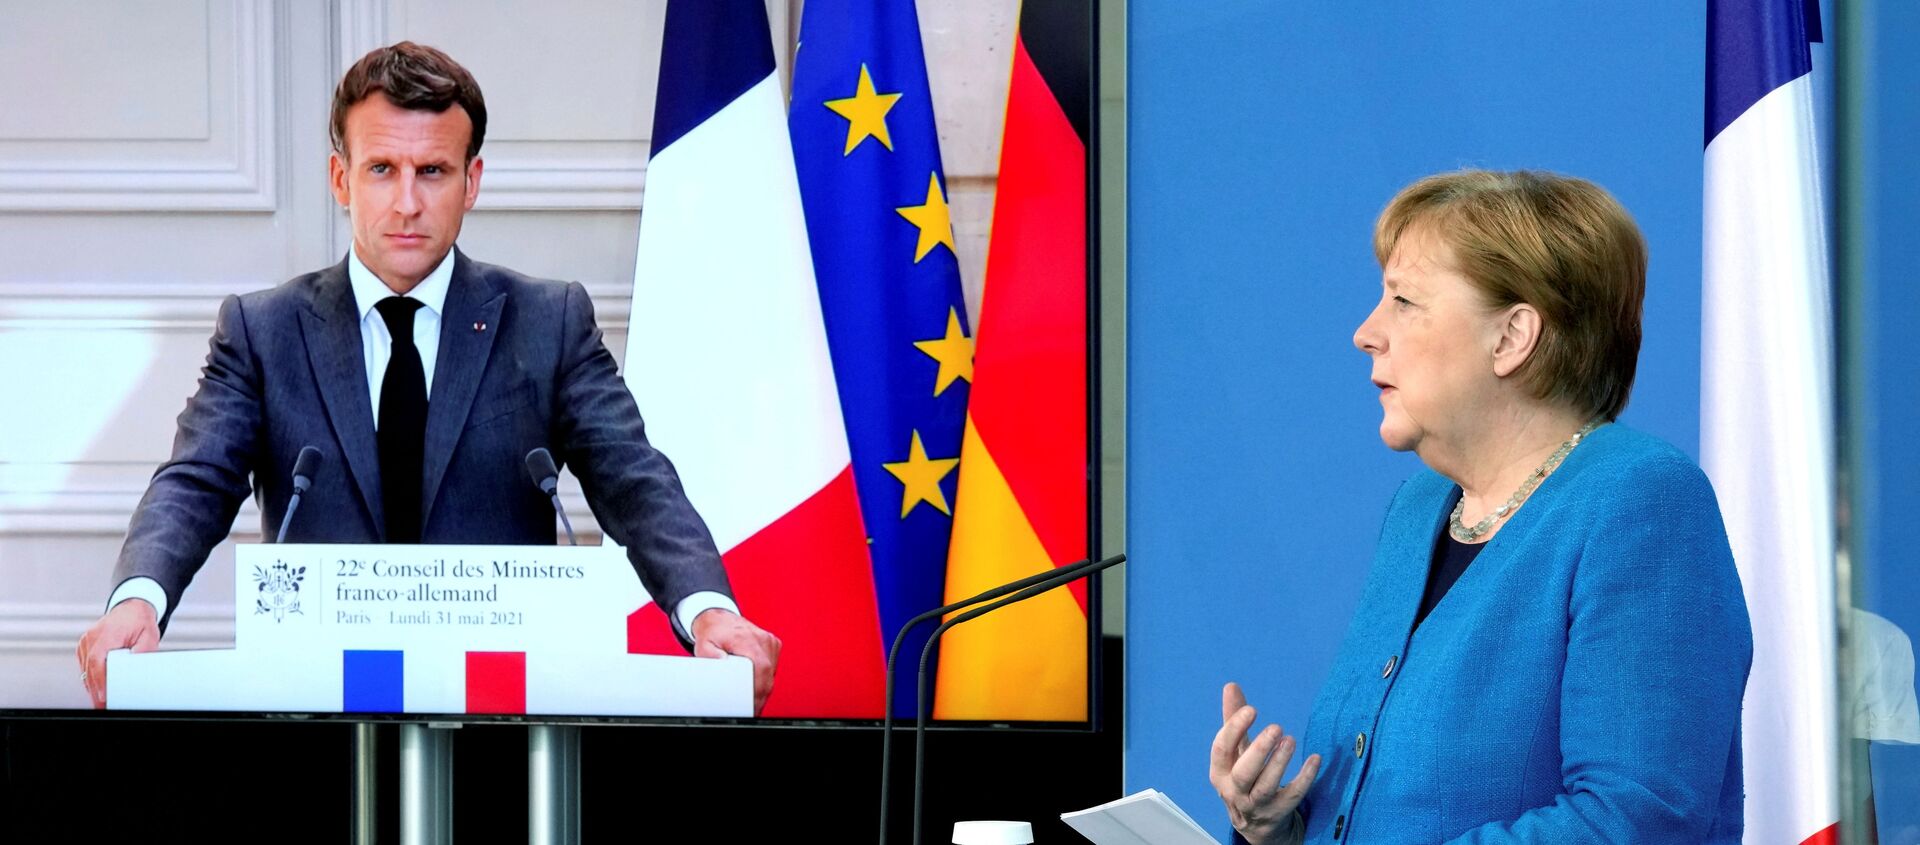 Emmanuel Macron ile Angela Merkel video konferansla gerçekleşen Fransa-Almanya Bakanlar Konseyi toplantısı sırasında  - Sputnik Türkiye, 1920, 31.05.2021